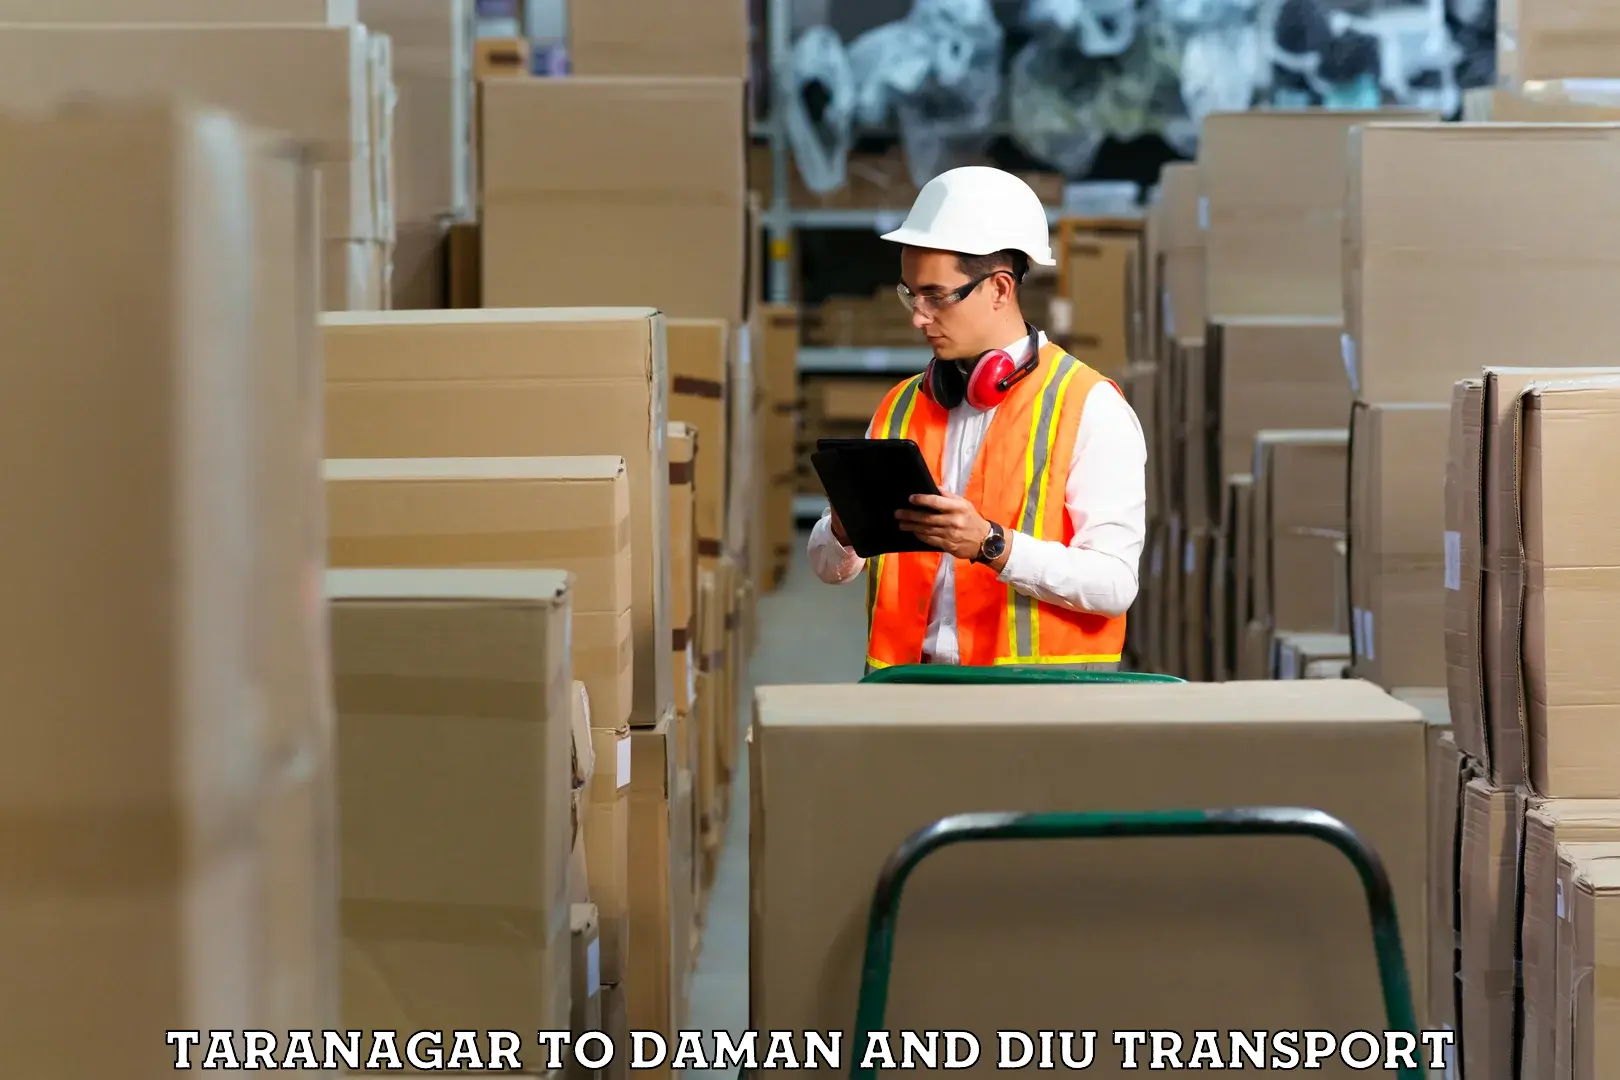 Container transportation services Taranagar to Daman and Diu